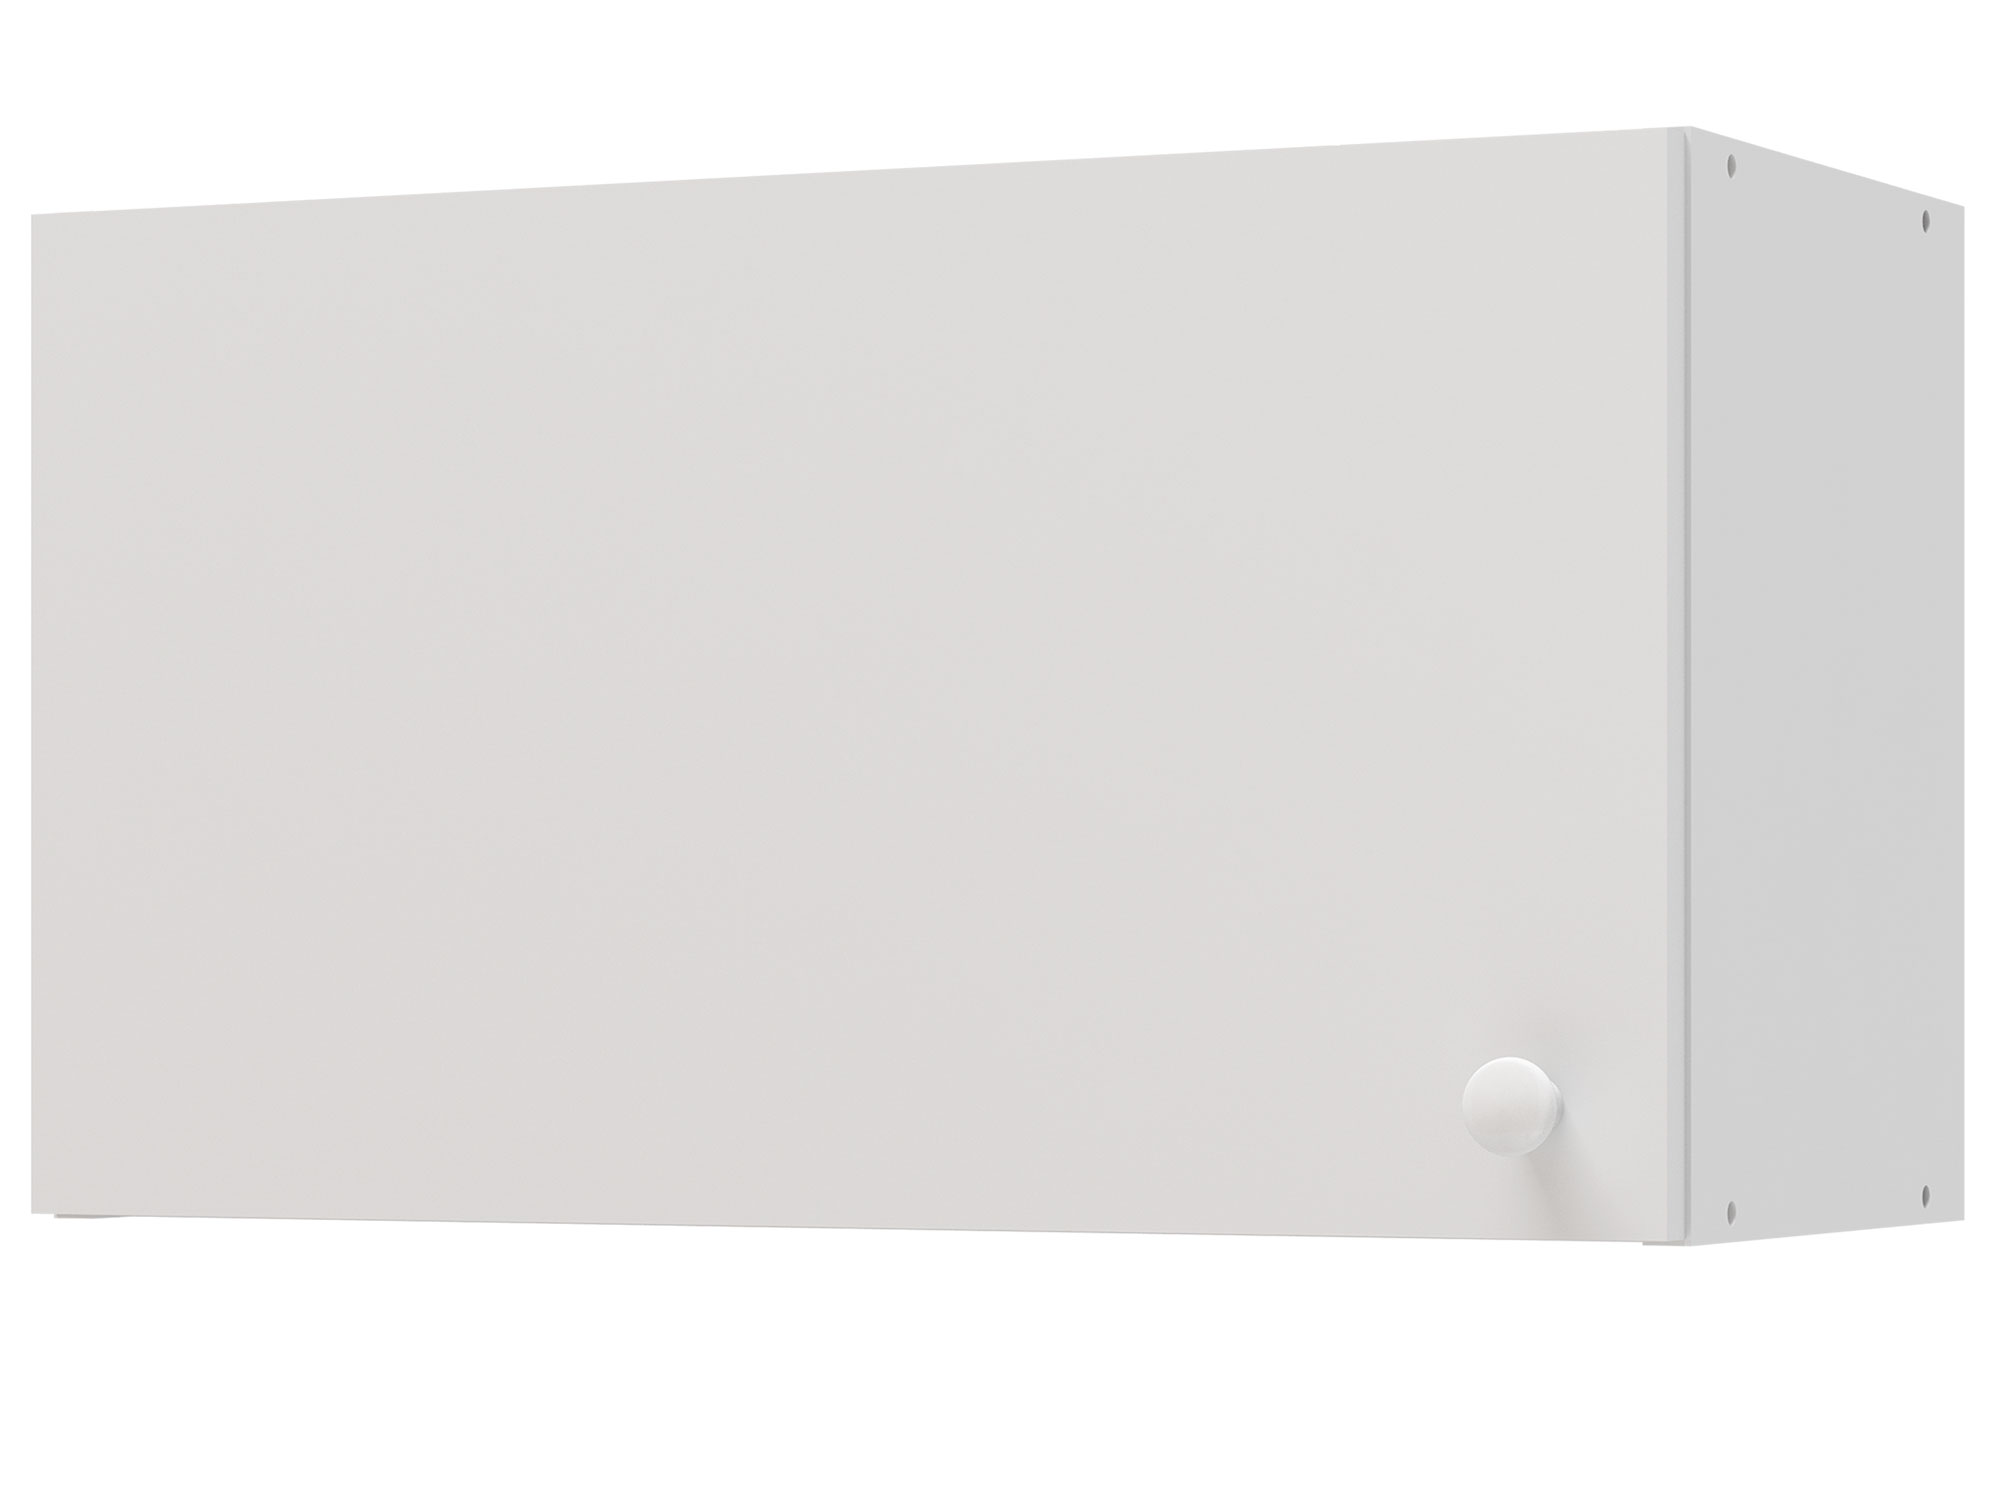 Шкаф навесной для вытяжки Бэлла, 60 см Белый, ЛДСП шкаф навесной для вытяжки greta 60 см светлый белый мдф лдсп